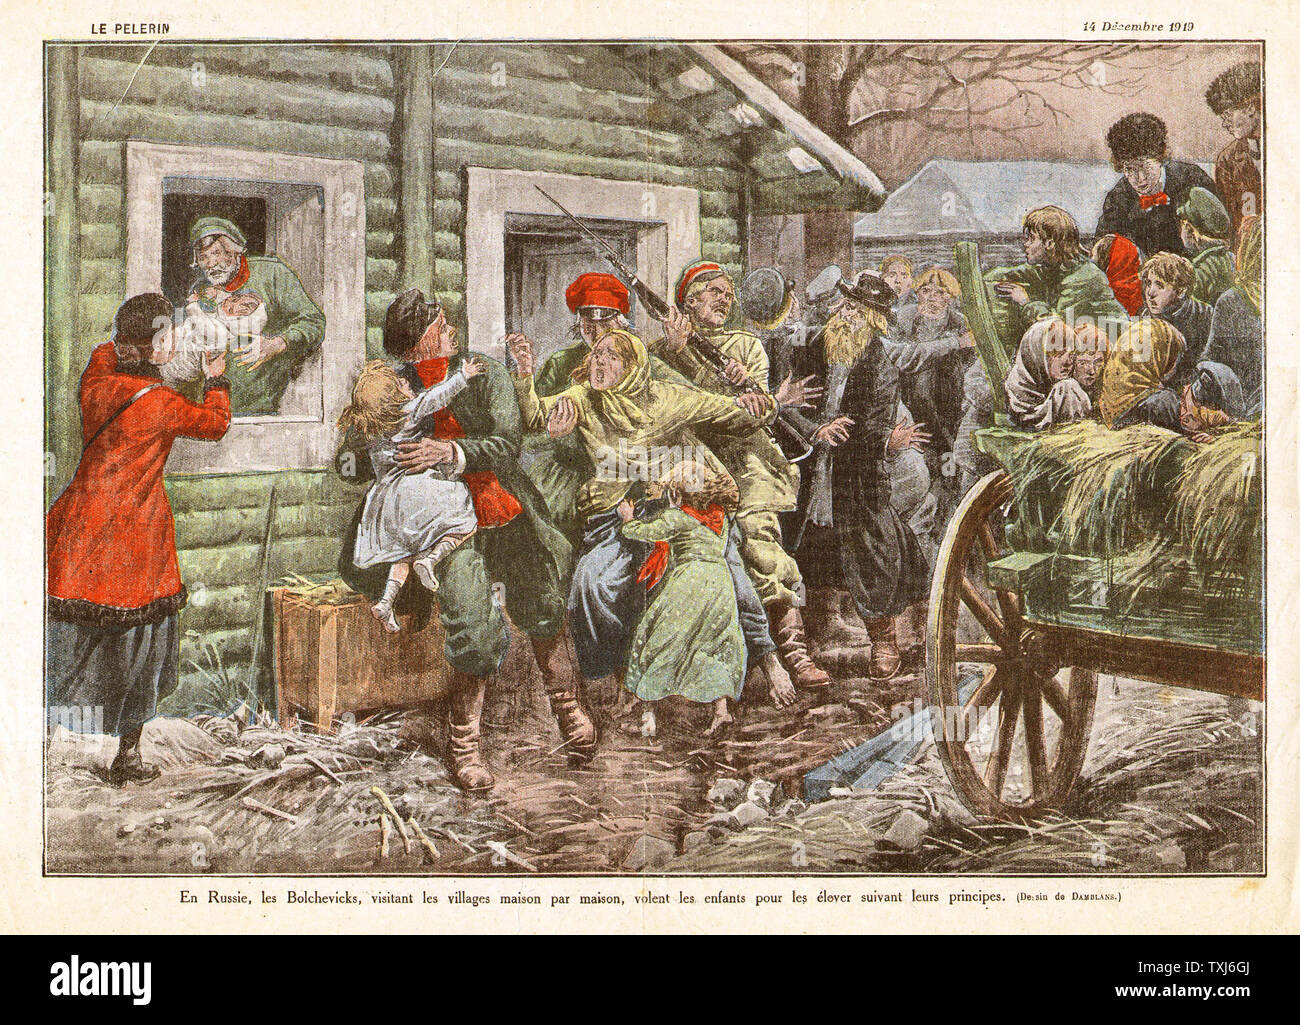 1919 La Perelin magazine illustration reporting Russian civil unrest with Bolsheviks Stock Photo